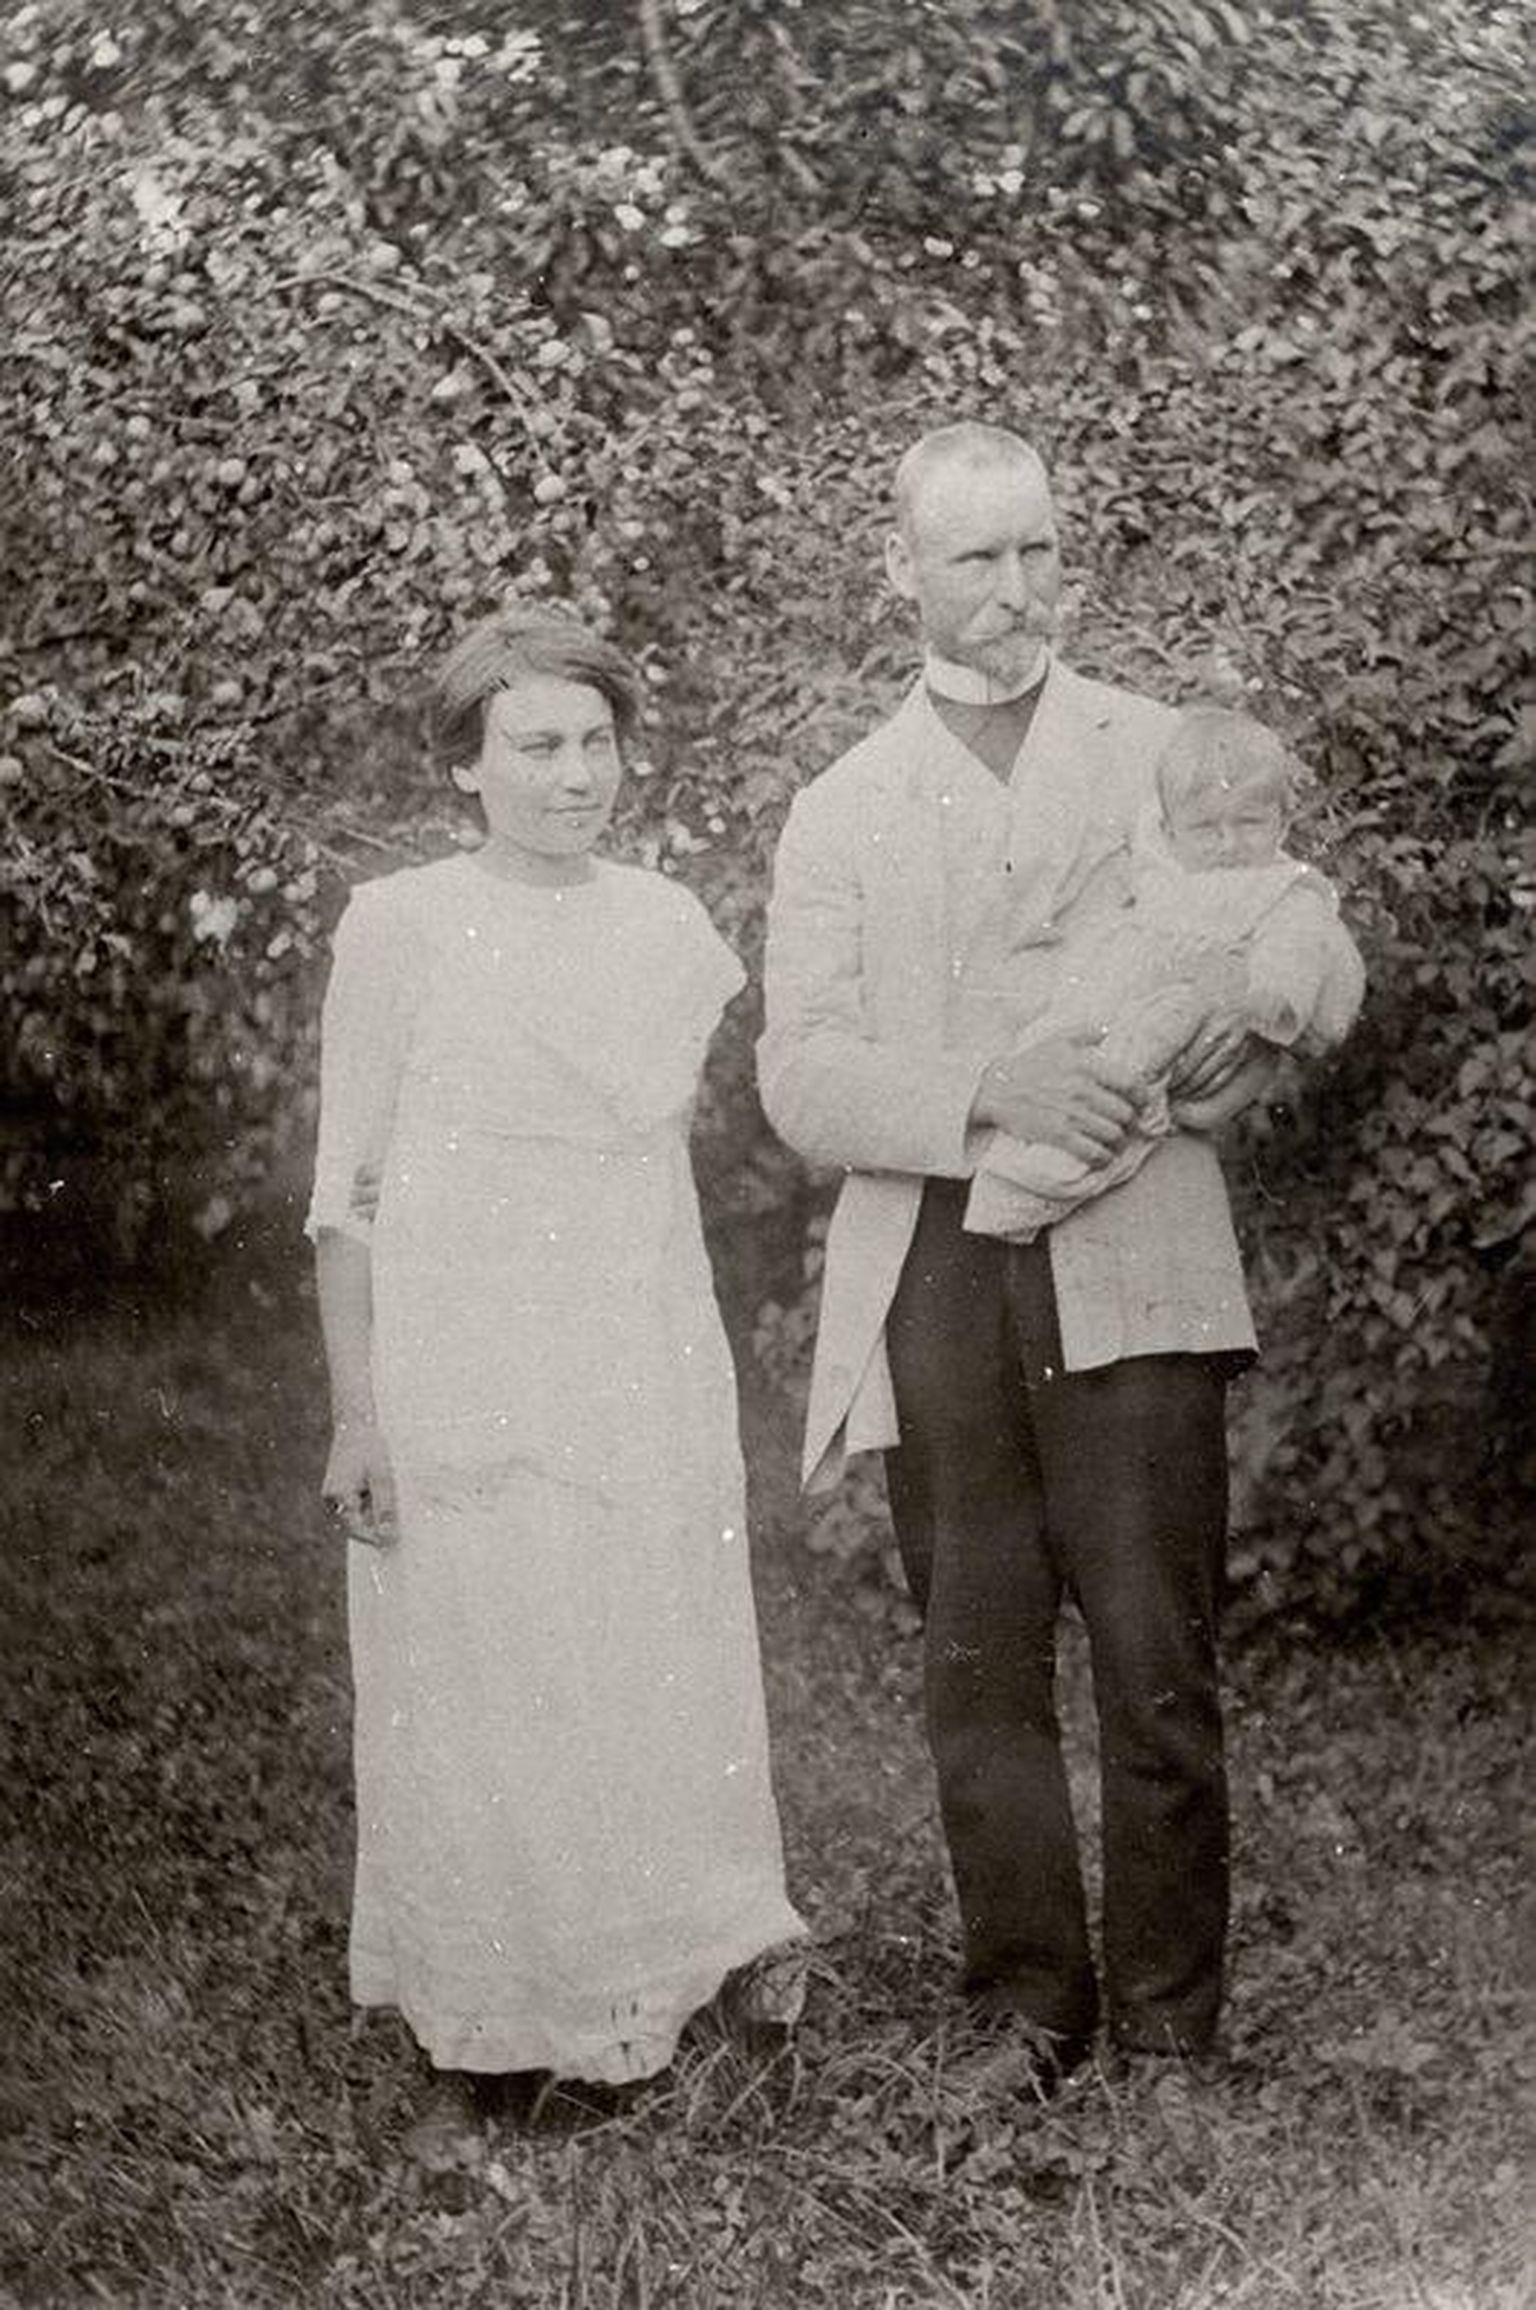 Jaan Sarv poja Hennu ja abikaasa Juliega 1912. aastal vanematekodus Lätis Brūnases.
Mõniste talurahvamuuseum